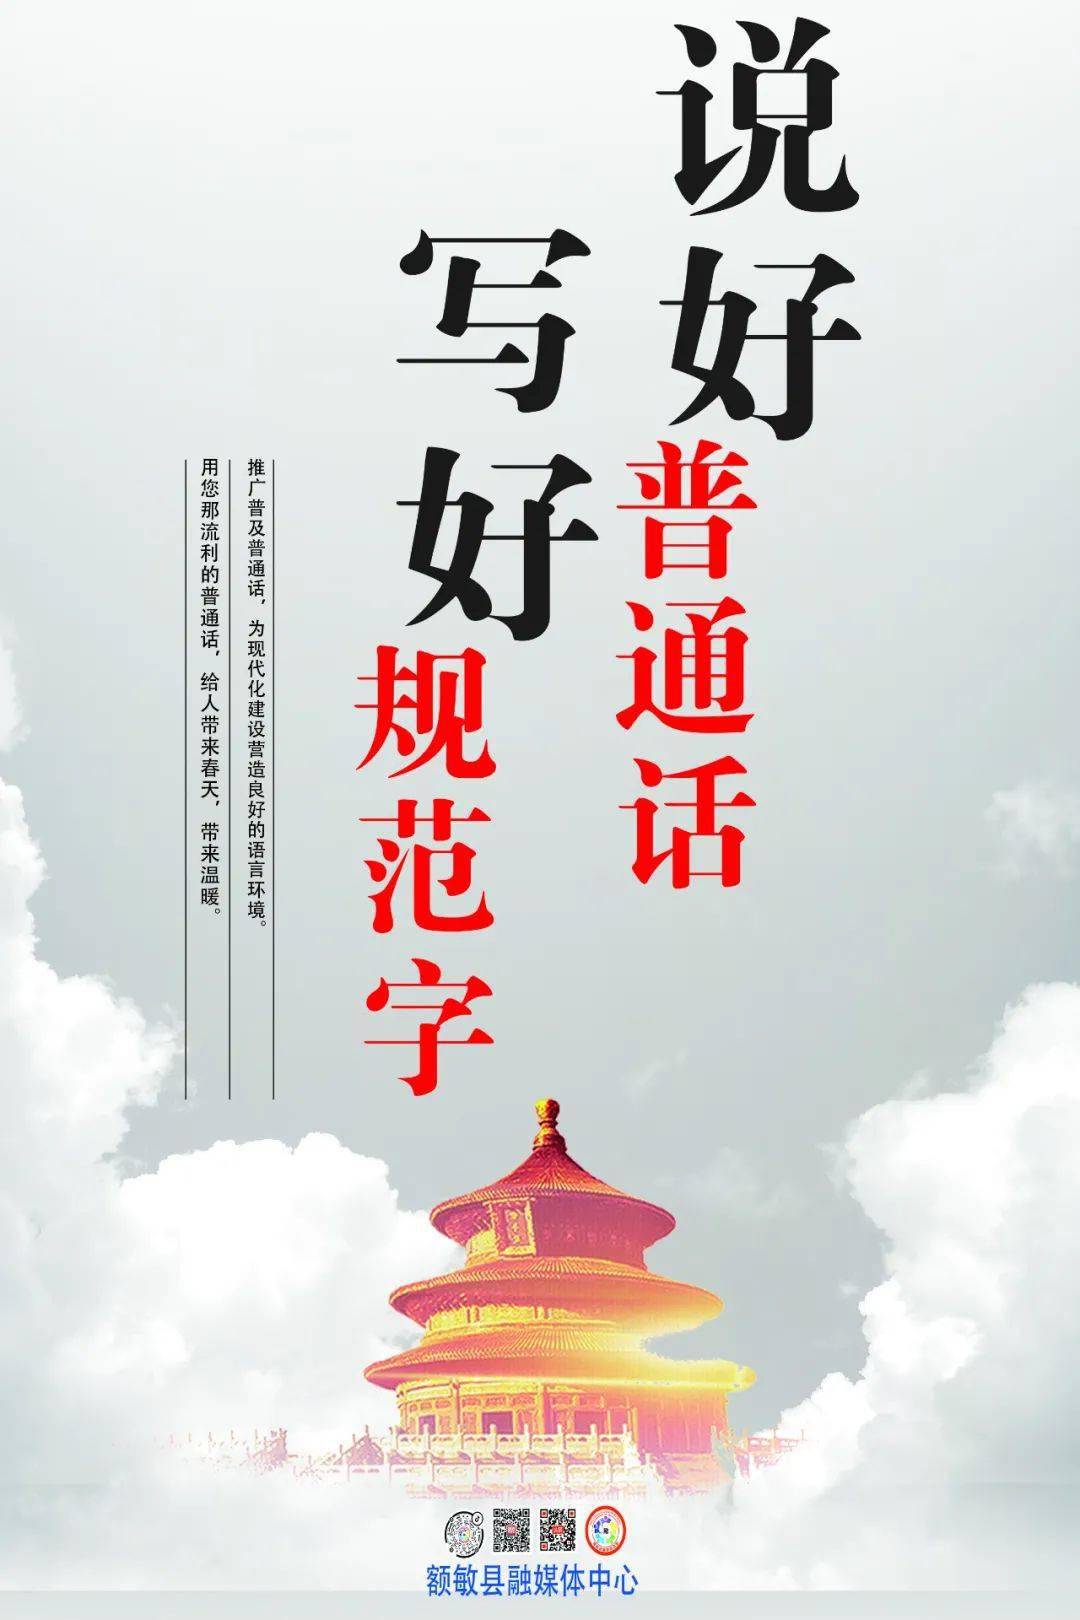 推普| 第24届全国推广普通话宣传周宣传海报